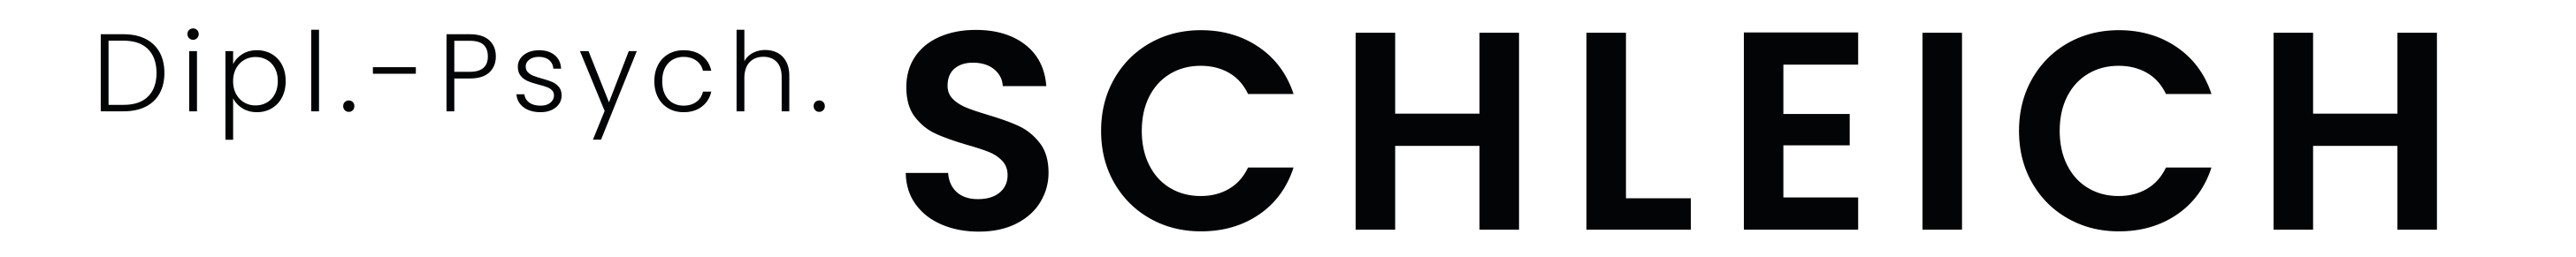 Logo - Psychotherapie Schleich Frankfurt